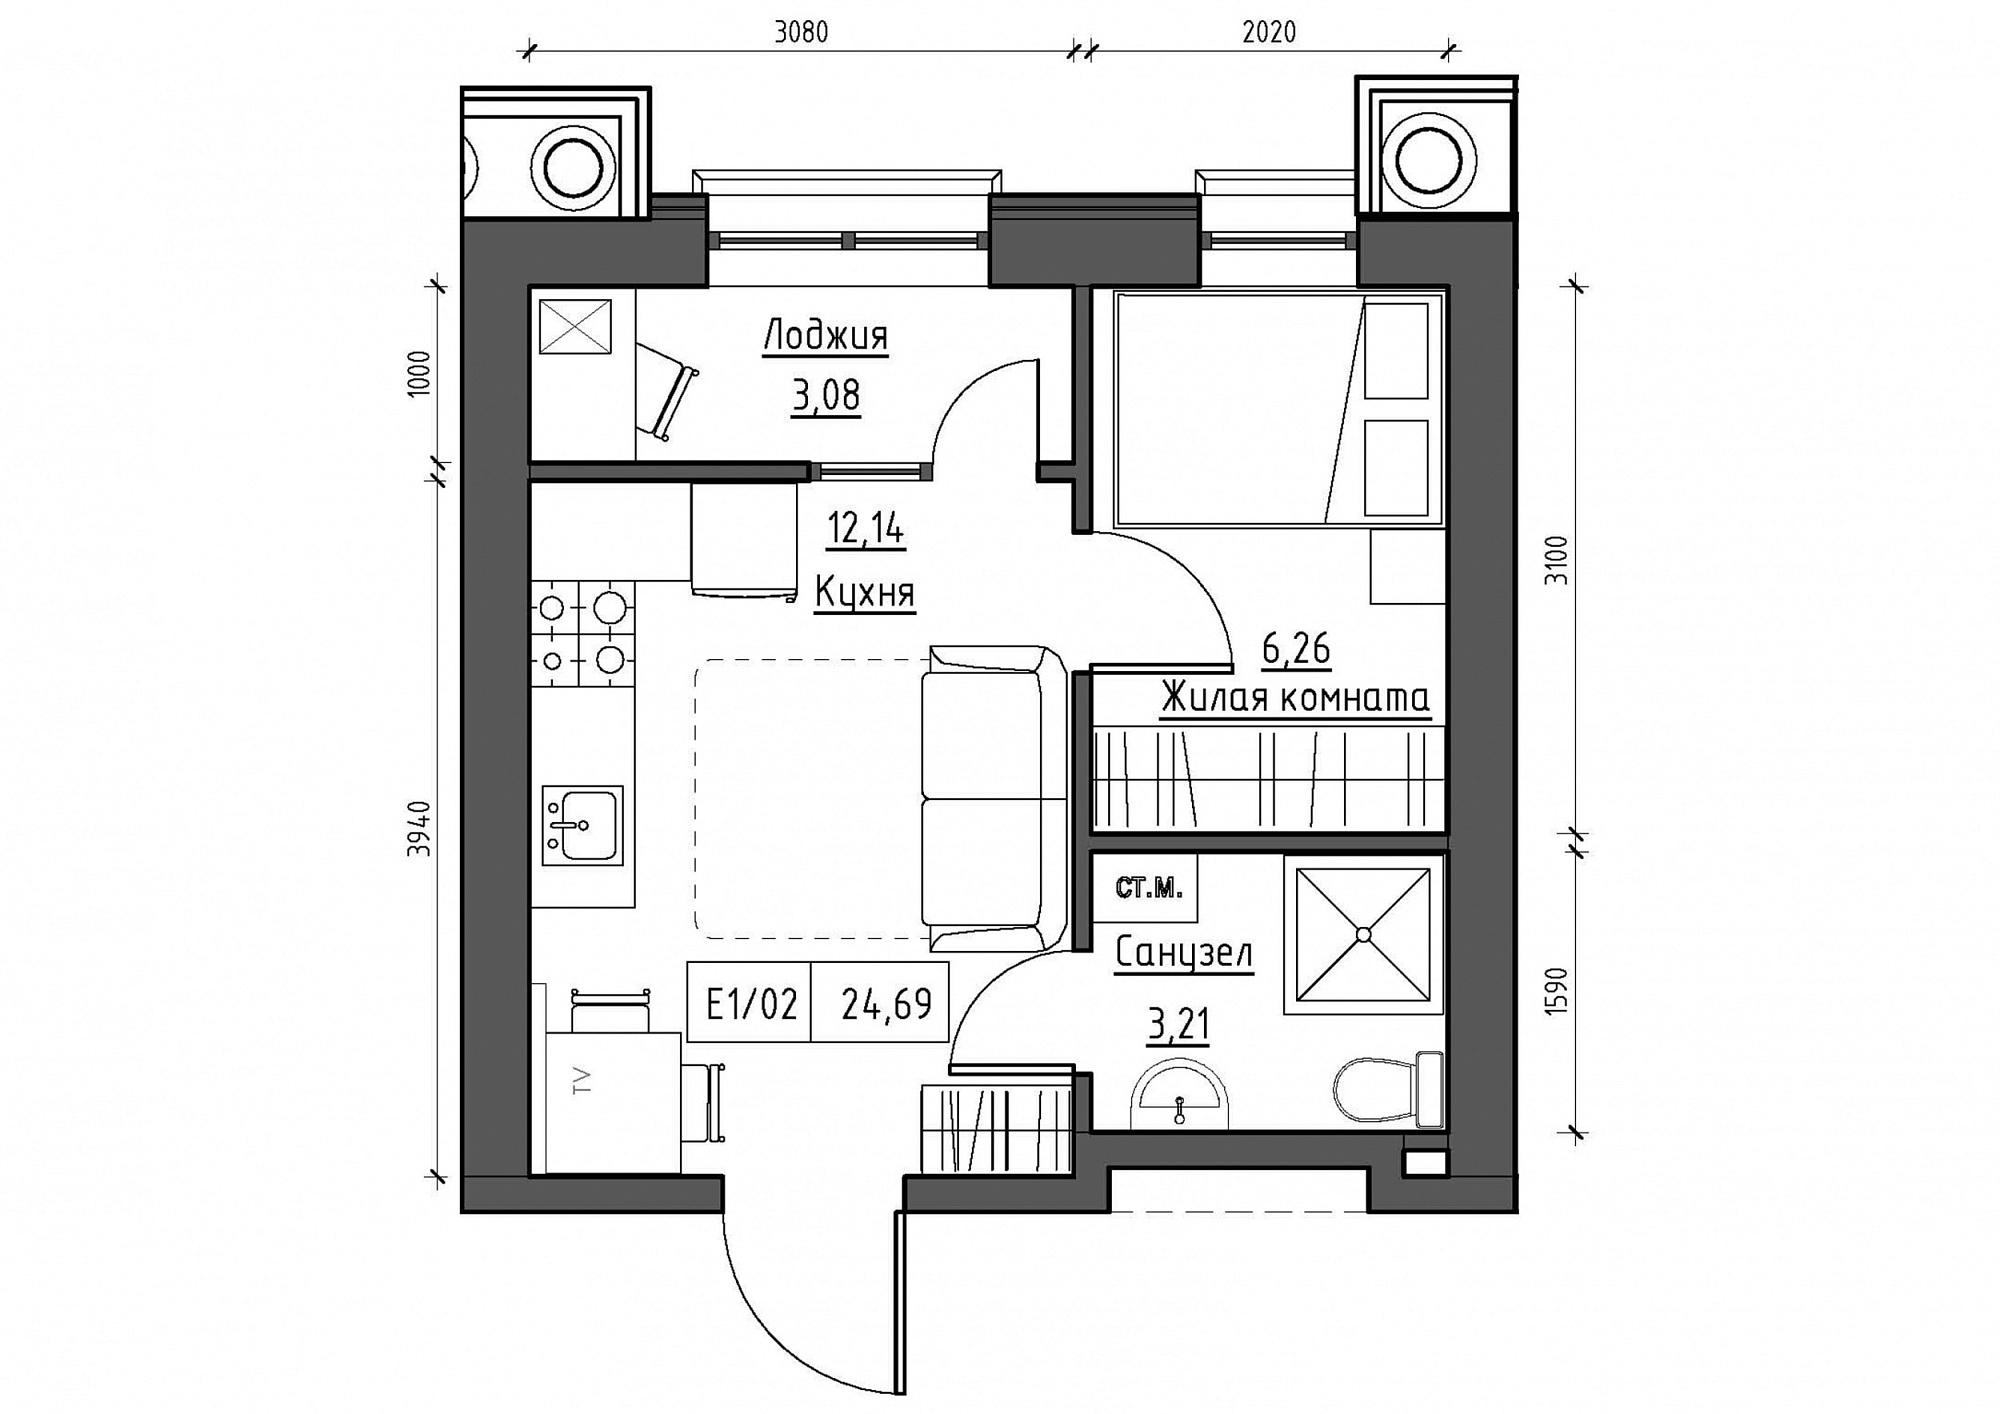 Планування 1-к квартира площею 25.11м2, KS-012-05/0002.